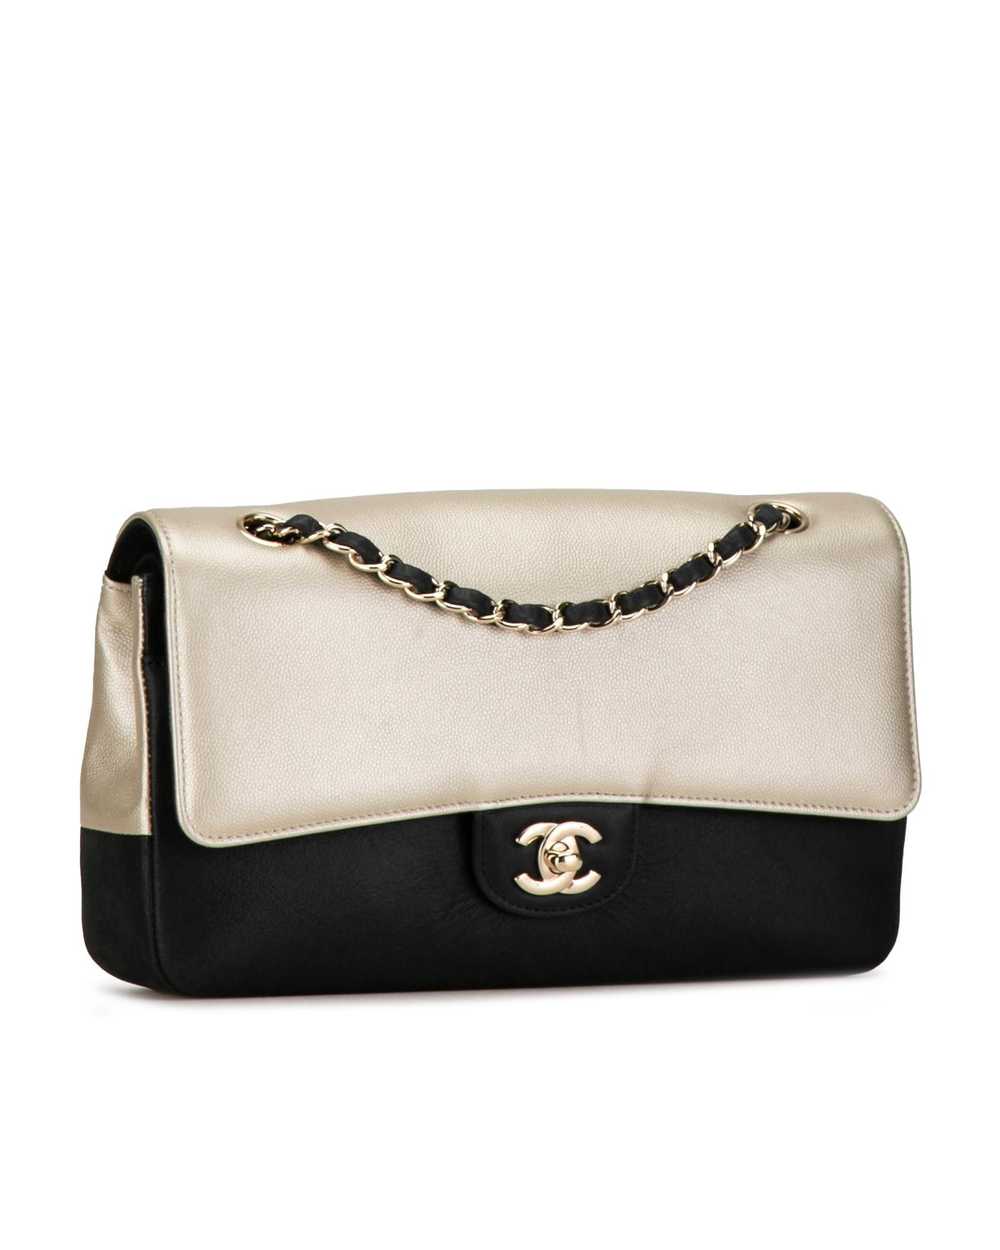 Chanel Bicolor Caviar Double Flap Shoulder Bag - image 2